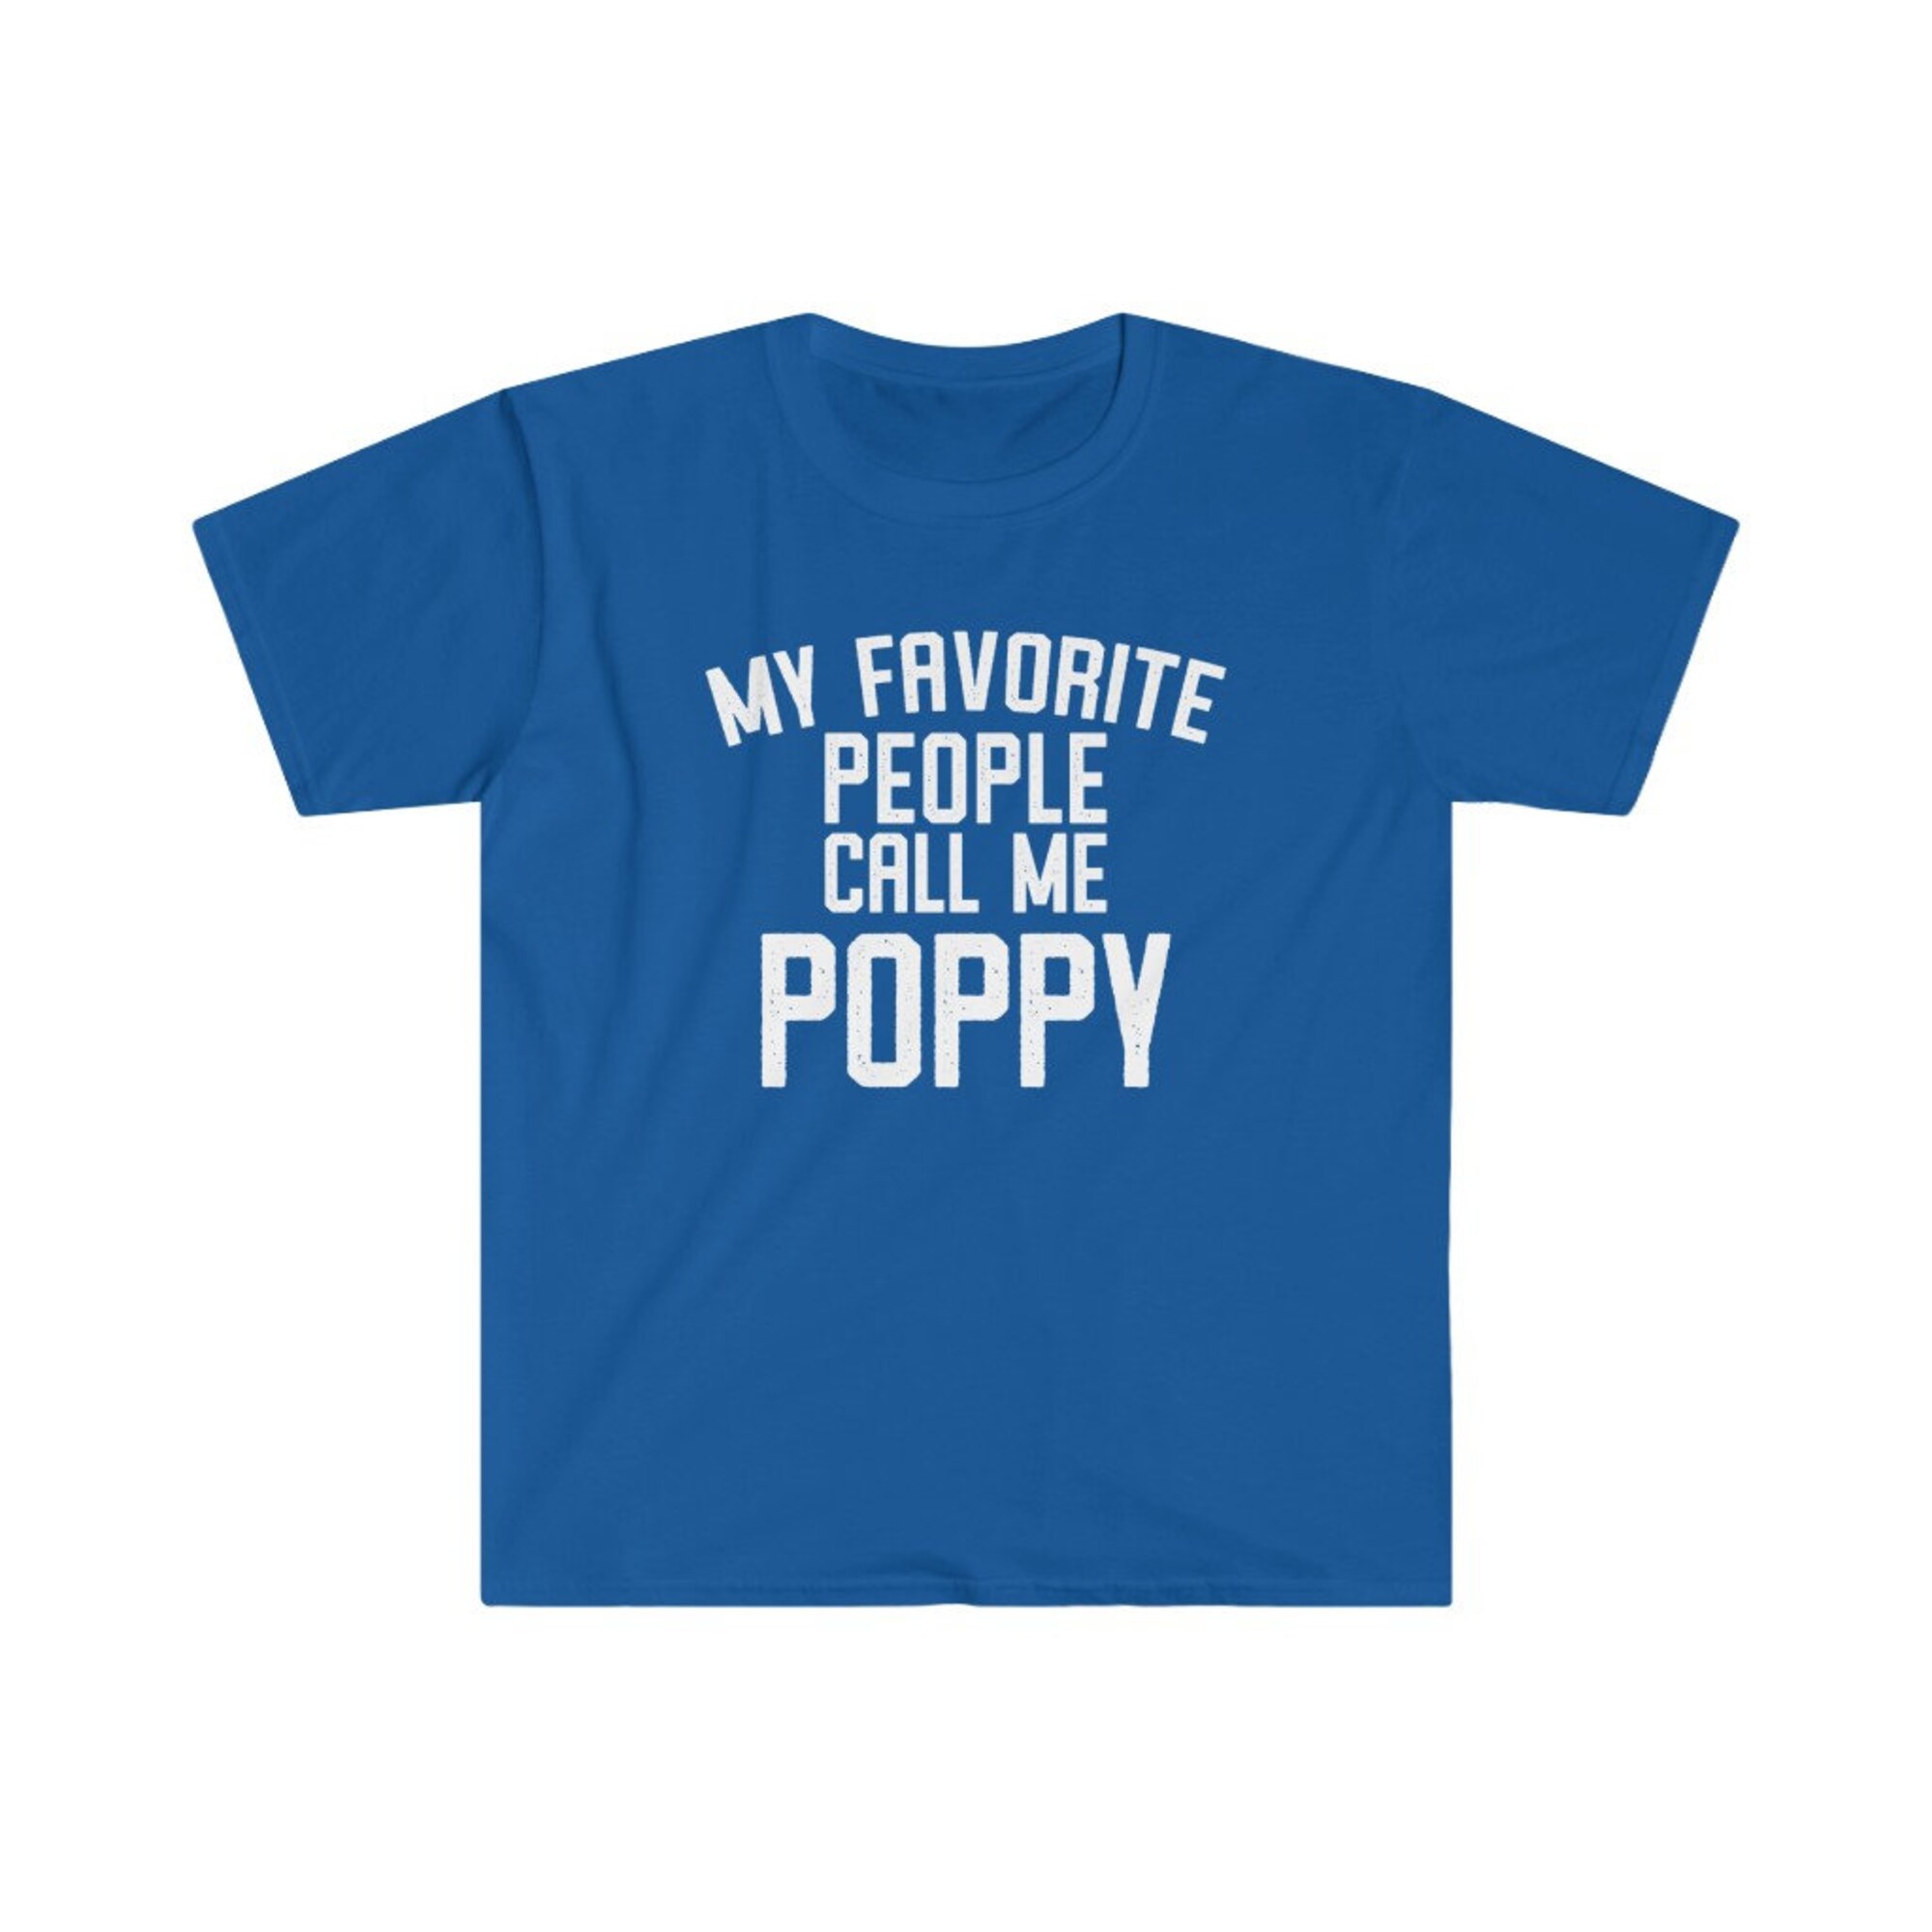 Discover Poppy Shirt, Poppy Gift, Poppy Tshirt, Gifts for Poppy, Poppy T shirt, Fathers Day Gift, Funny Poppy Gift, My Favorite People Call Me Poppy